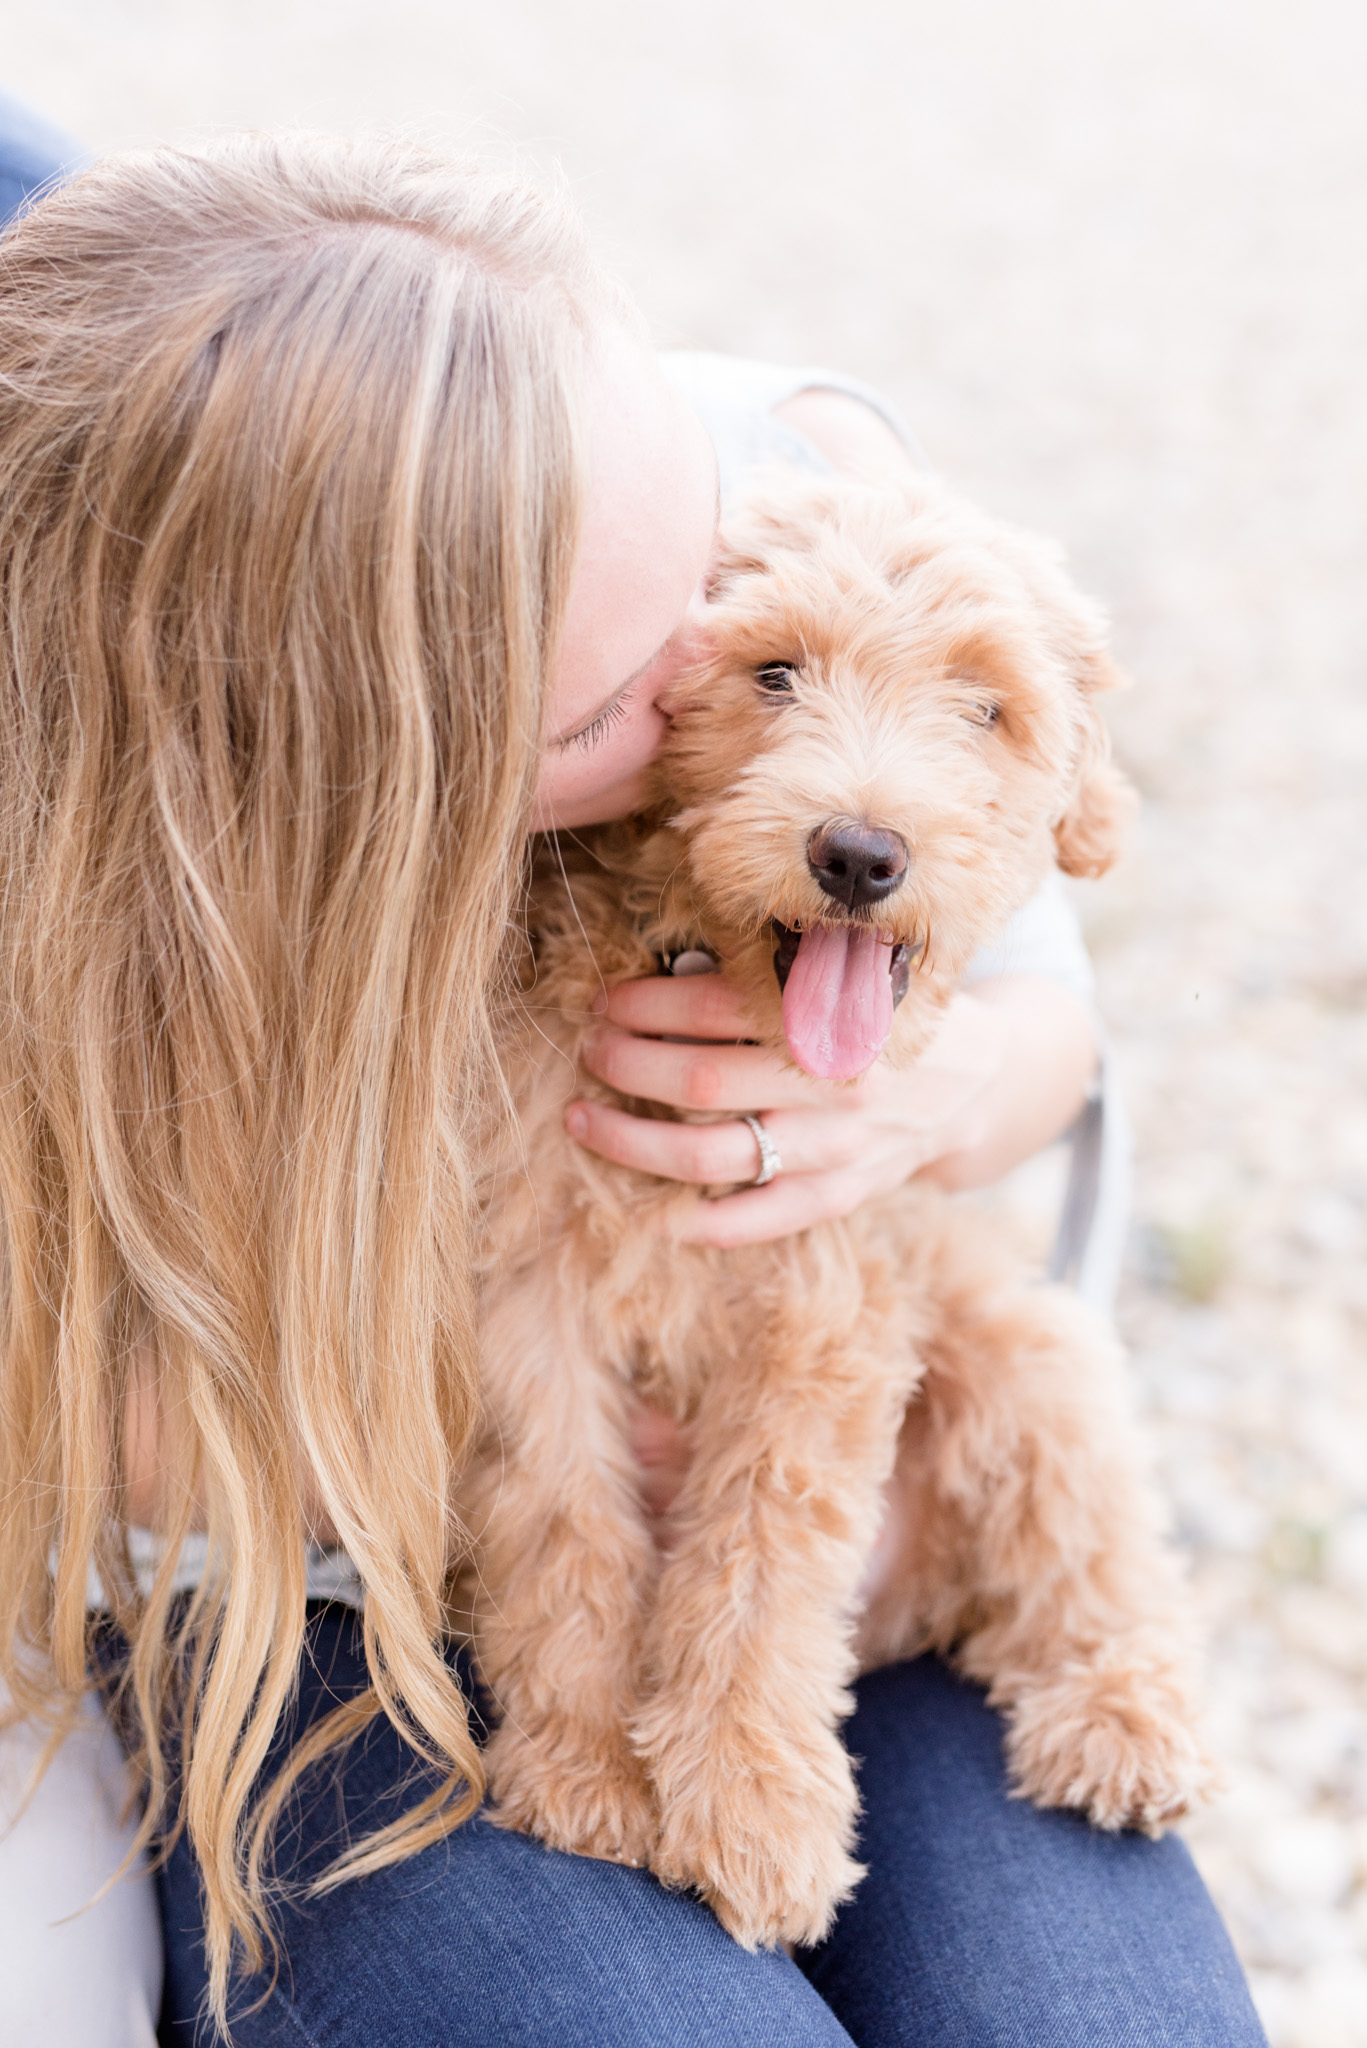 Woman kisses golden doodle puppy.